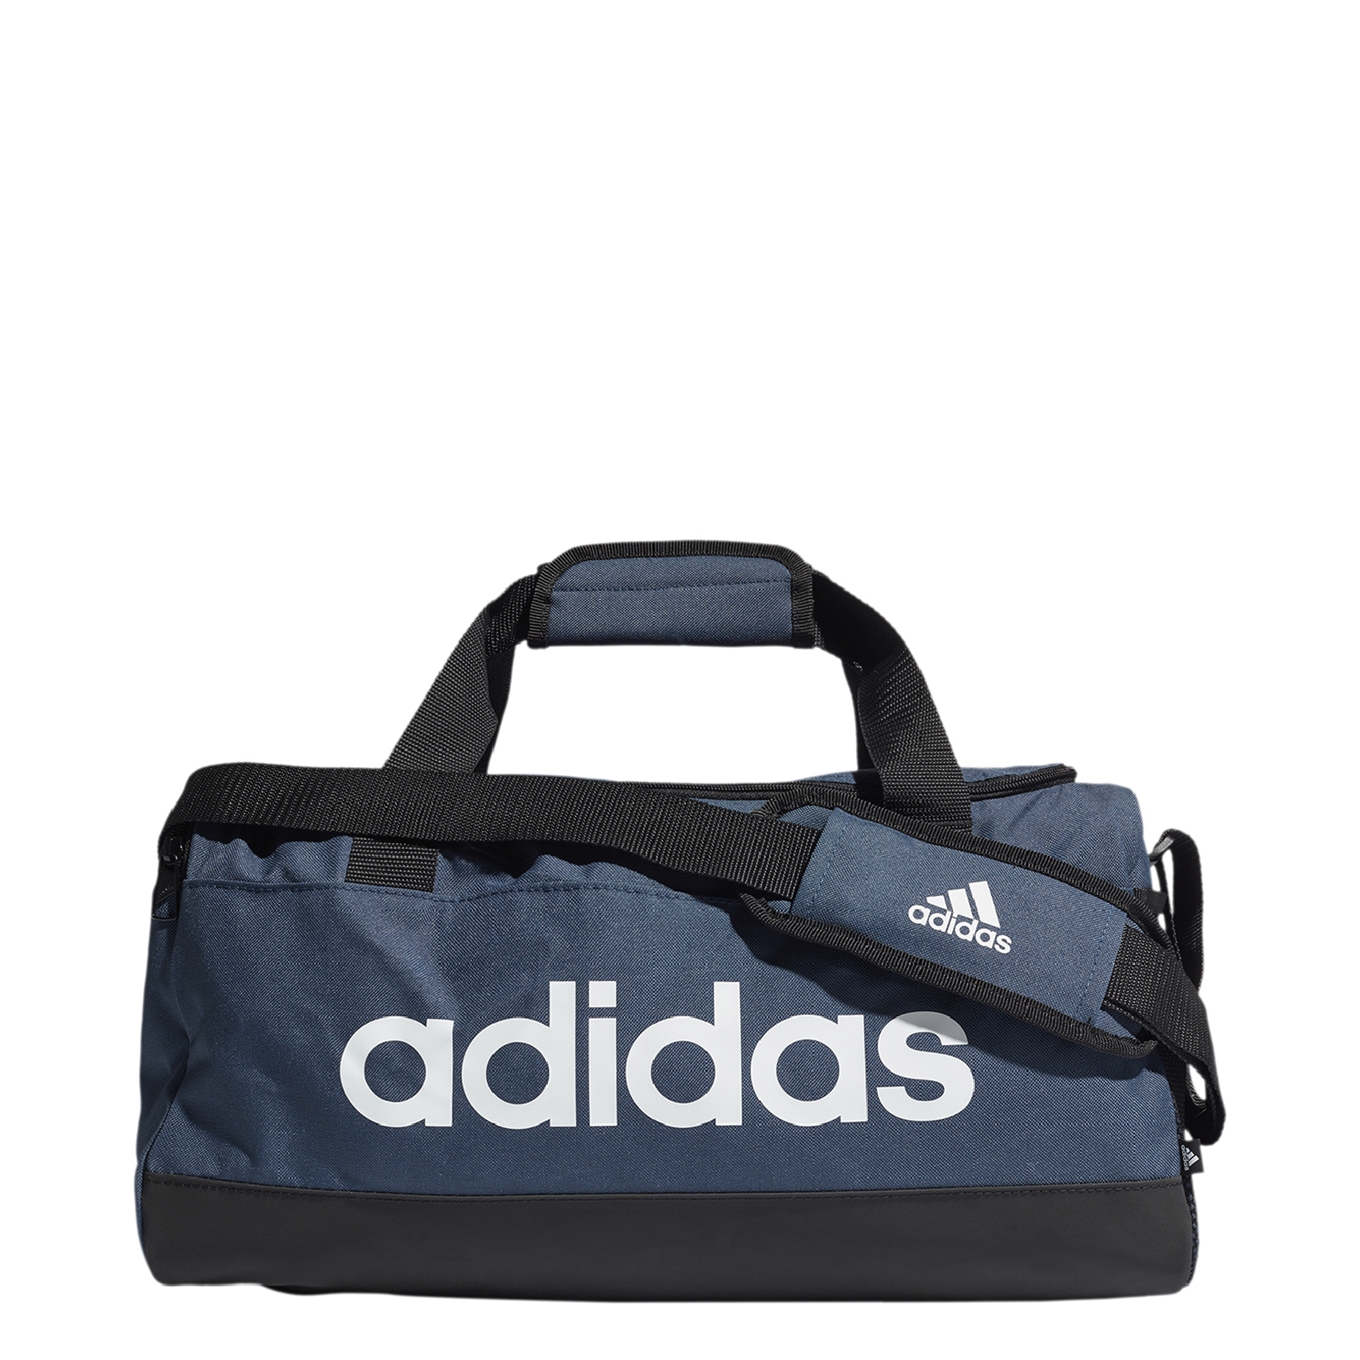 Adidas Performance sporttas Linear Duffel S 25 L donkerblauw/zwart/wit online kopen